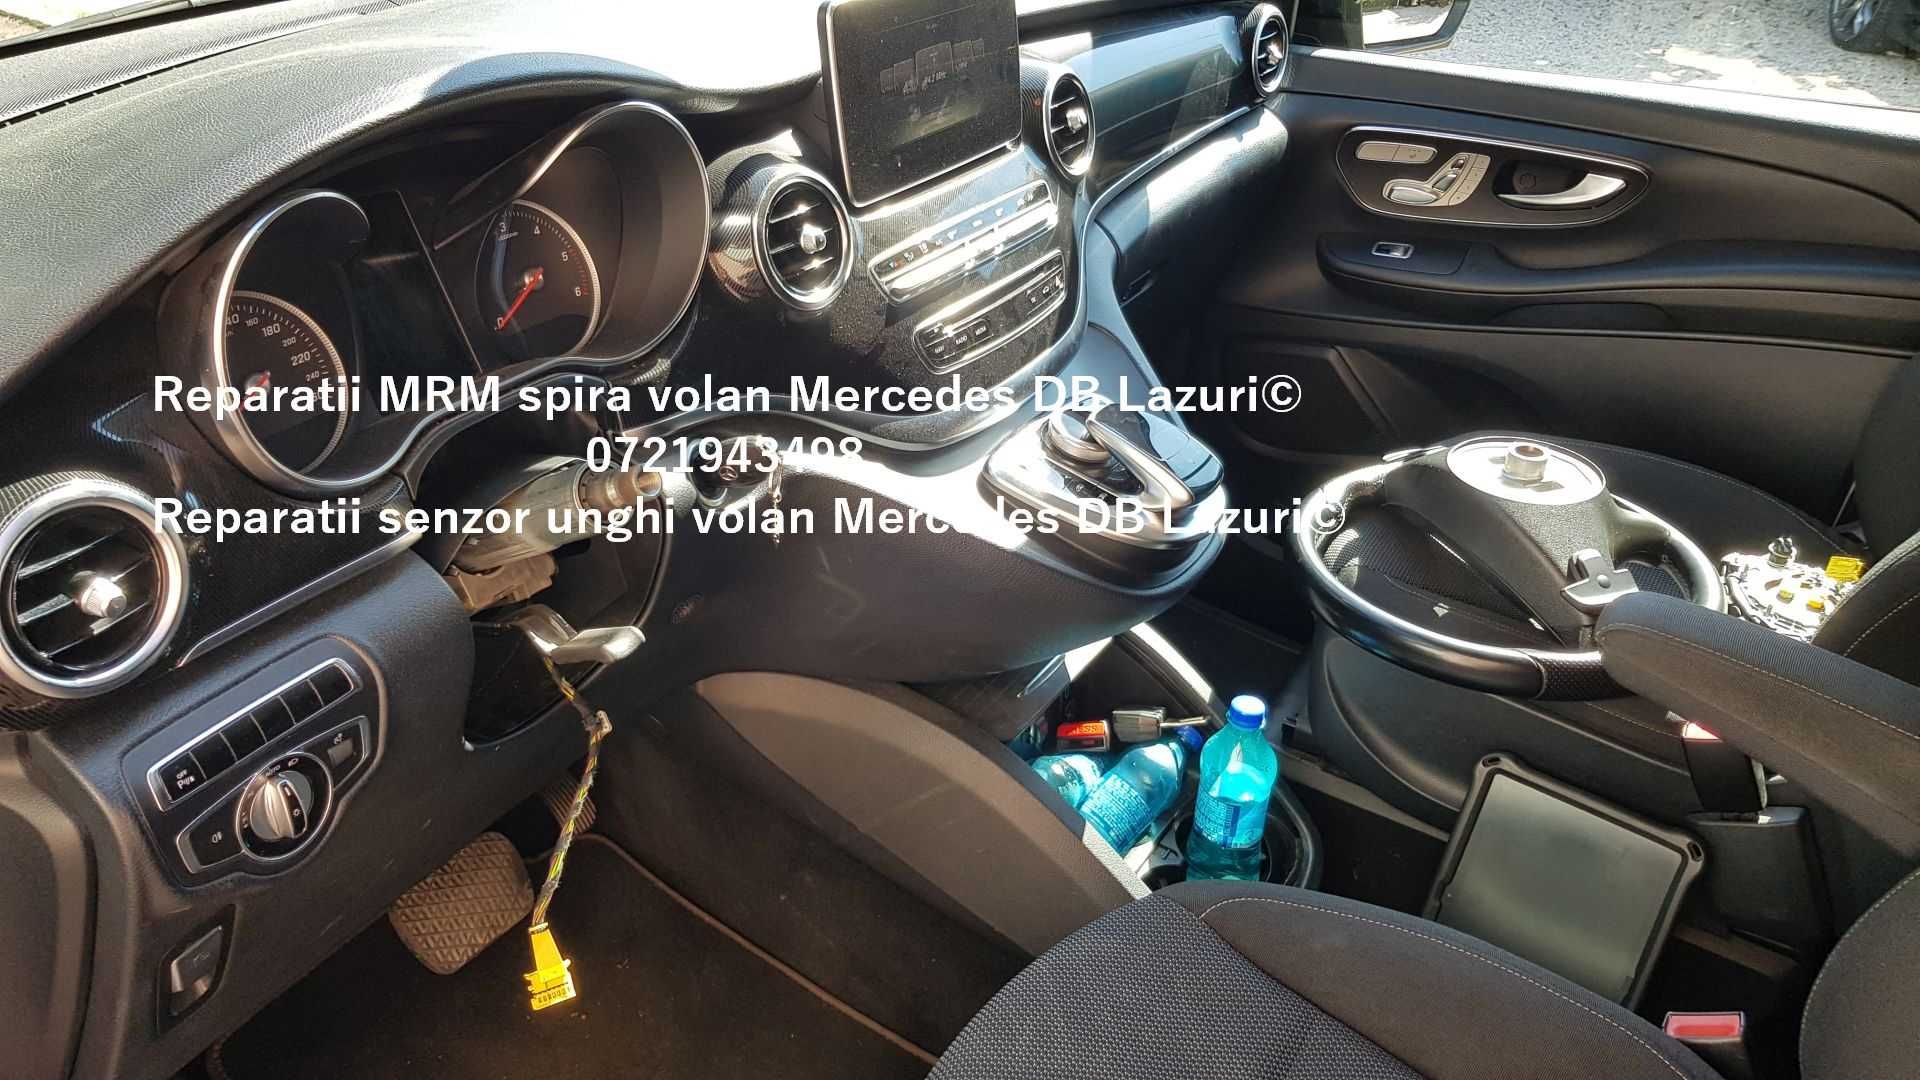 Senzor unghi volan MRM Mercedes V class w447 spira volan